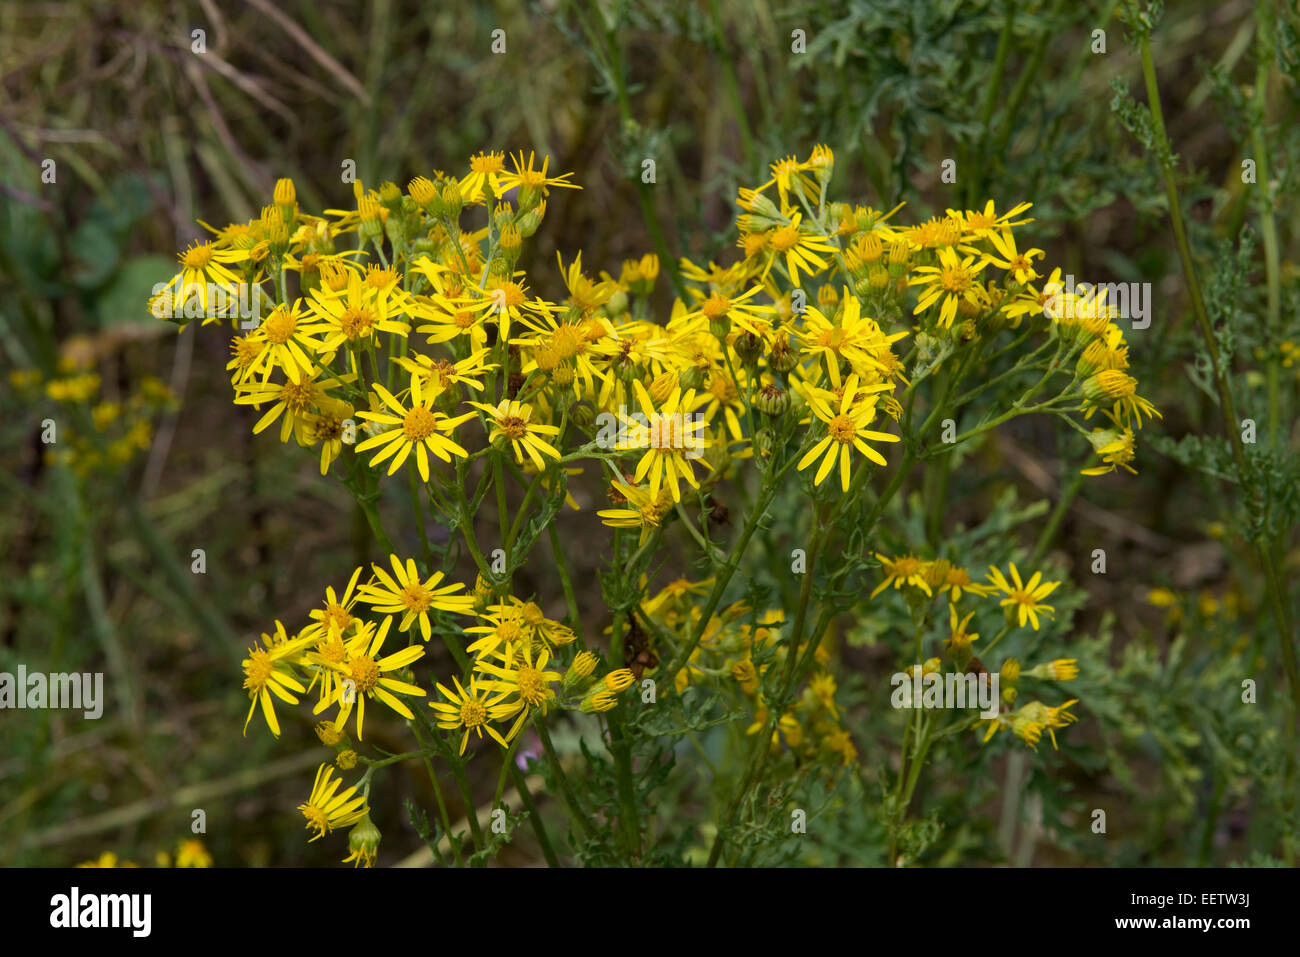 Erba tossica, jacobaea vulgaris o senecio jacobaea, fiori di colore giallo su questa prateria invasiva infestante che è velenoso per alcuni vivi Foto Stock